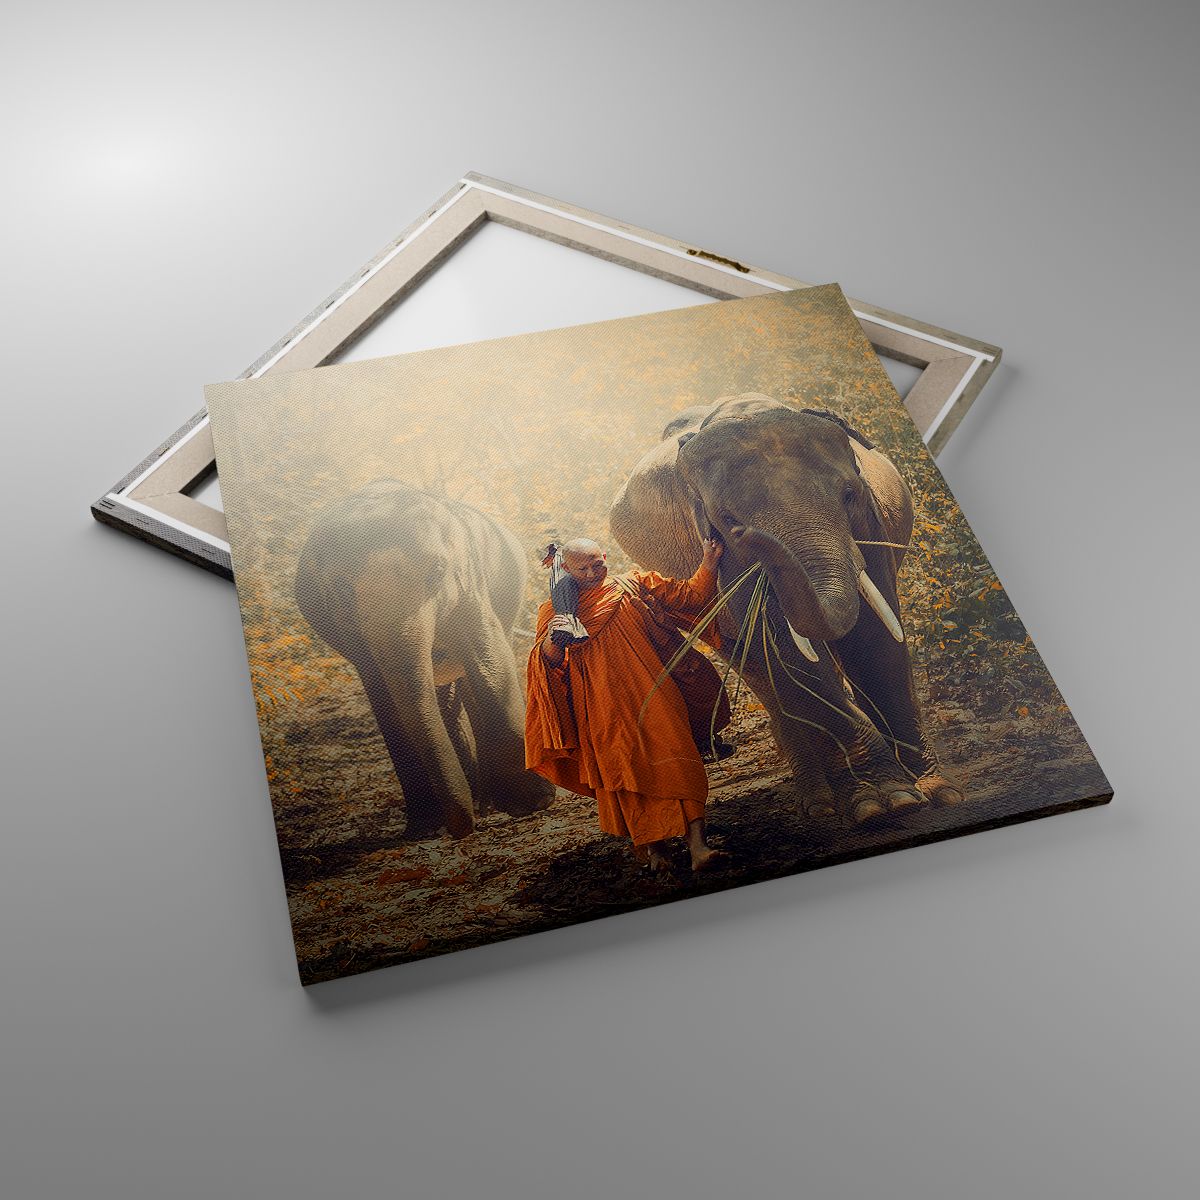 Leinwandbild Asien, Leinwandbild Elefant, Leinwandbild Mönch, Leinwandbild Urwald, Leinwandbild Buddhismus